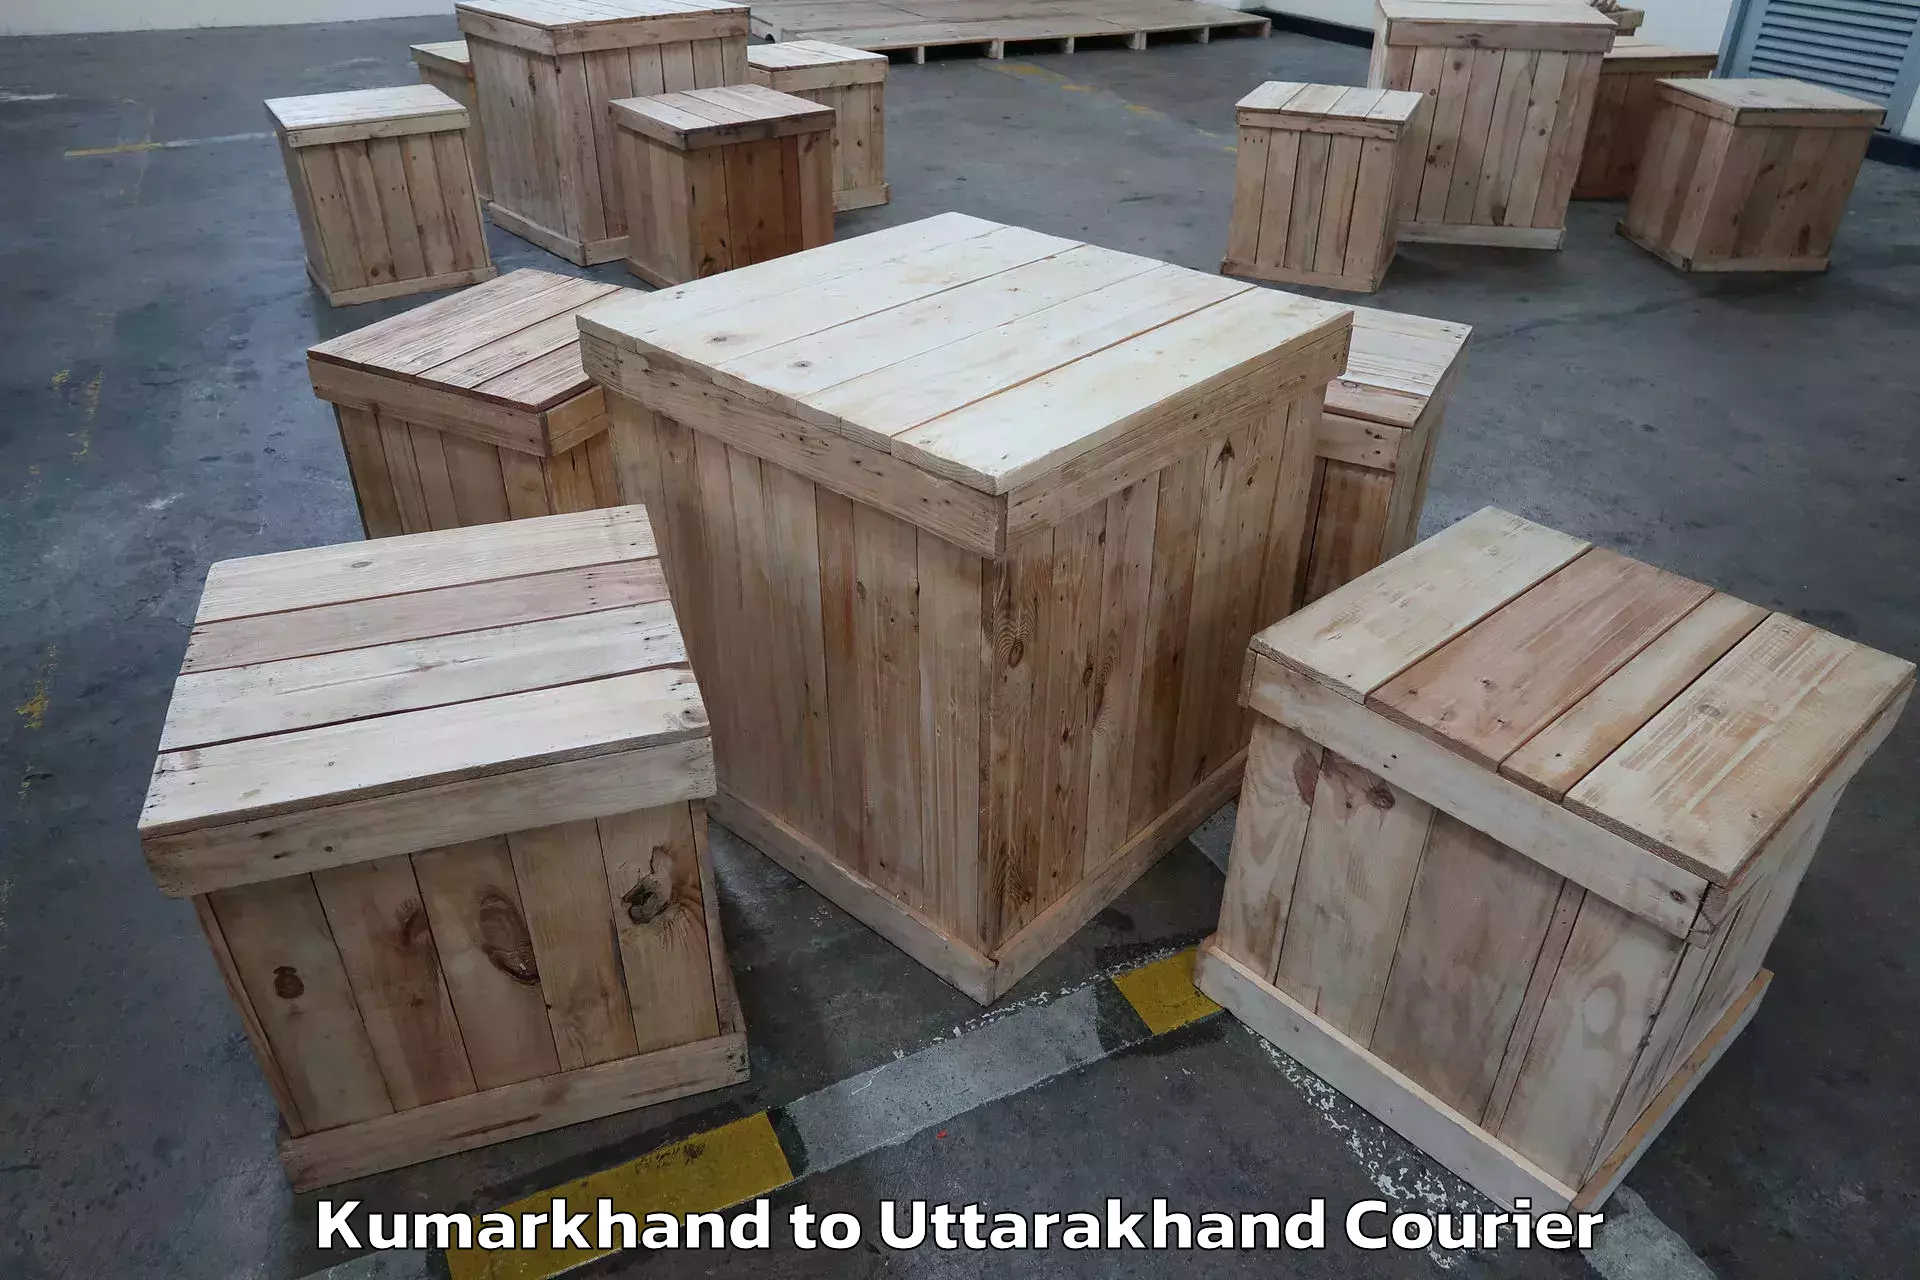 Customized furniture moving in Kumarkhand to Paithani